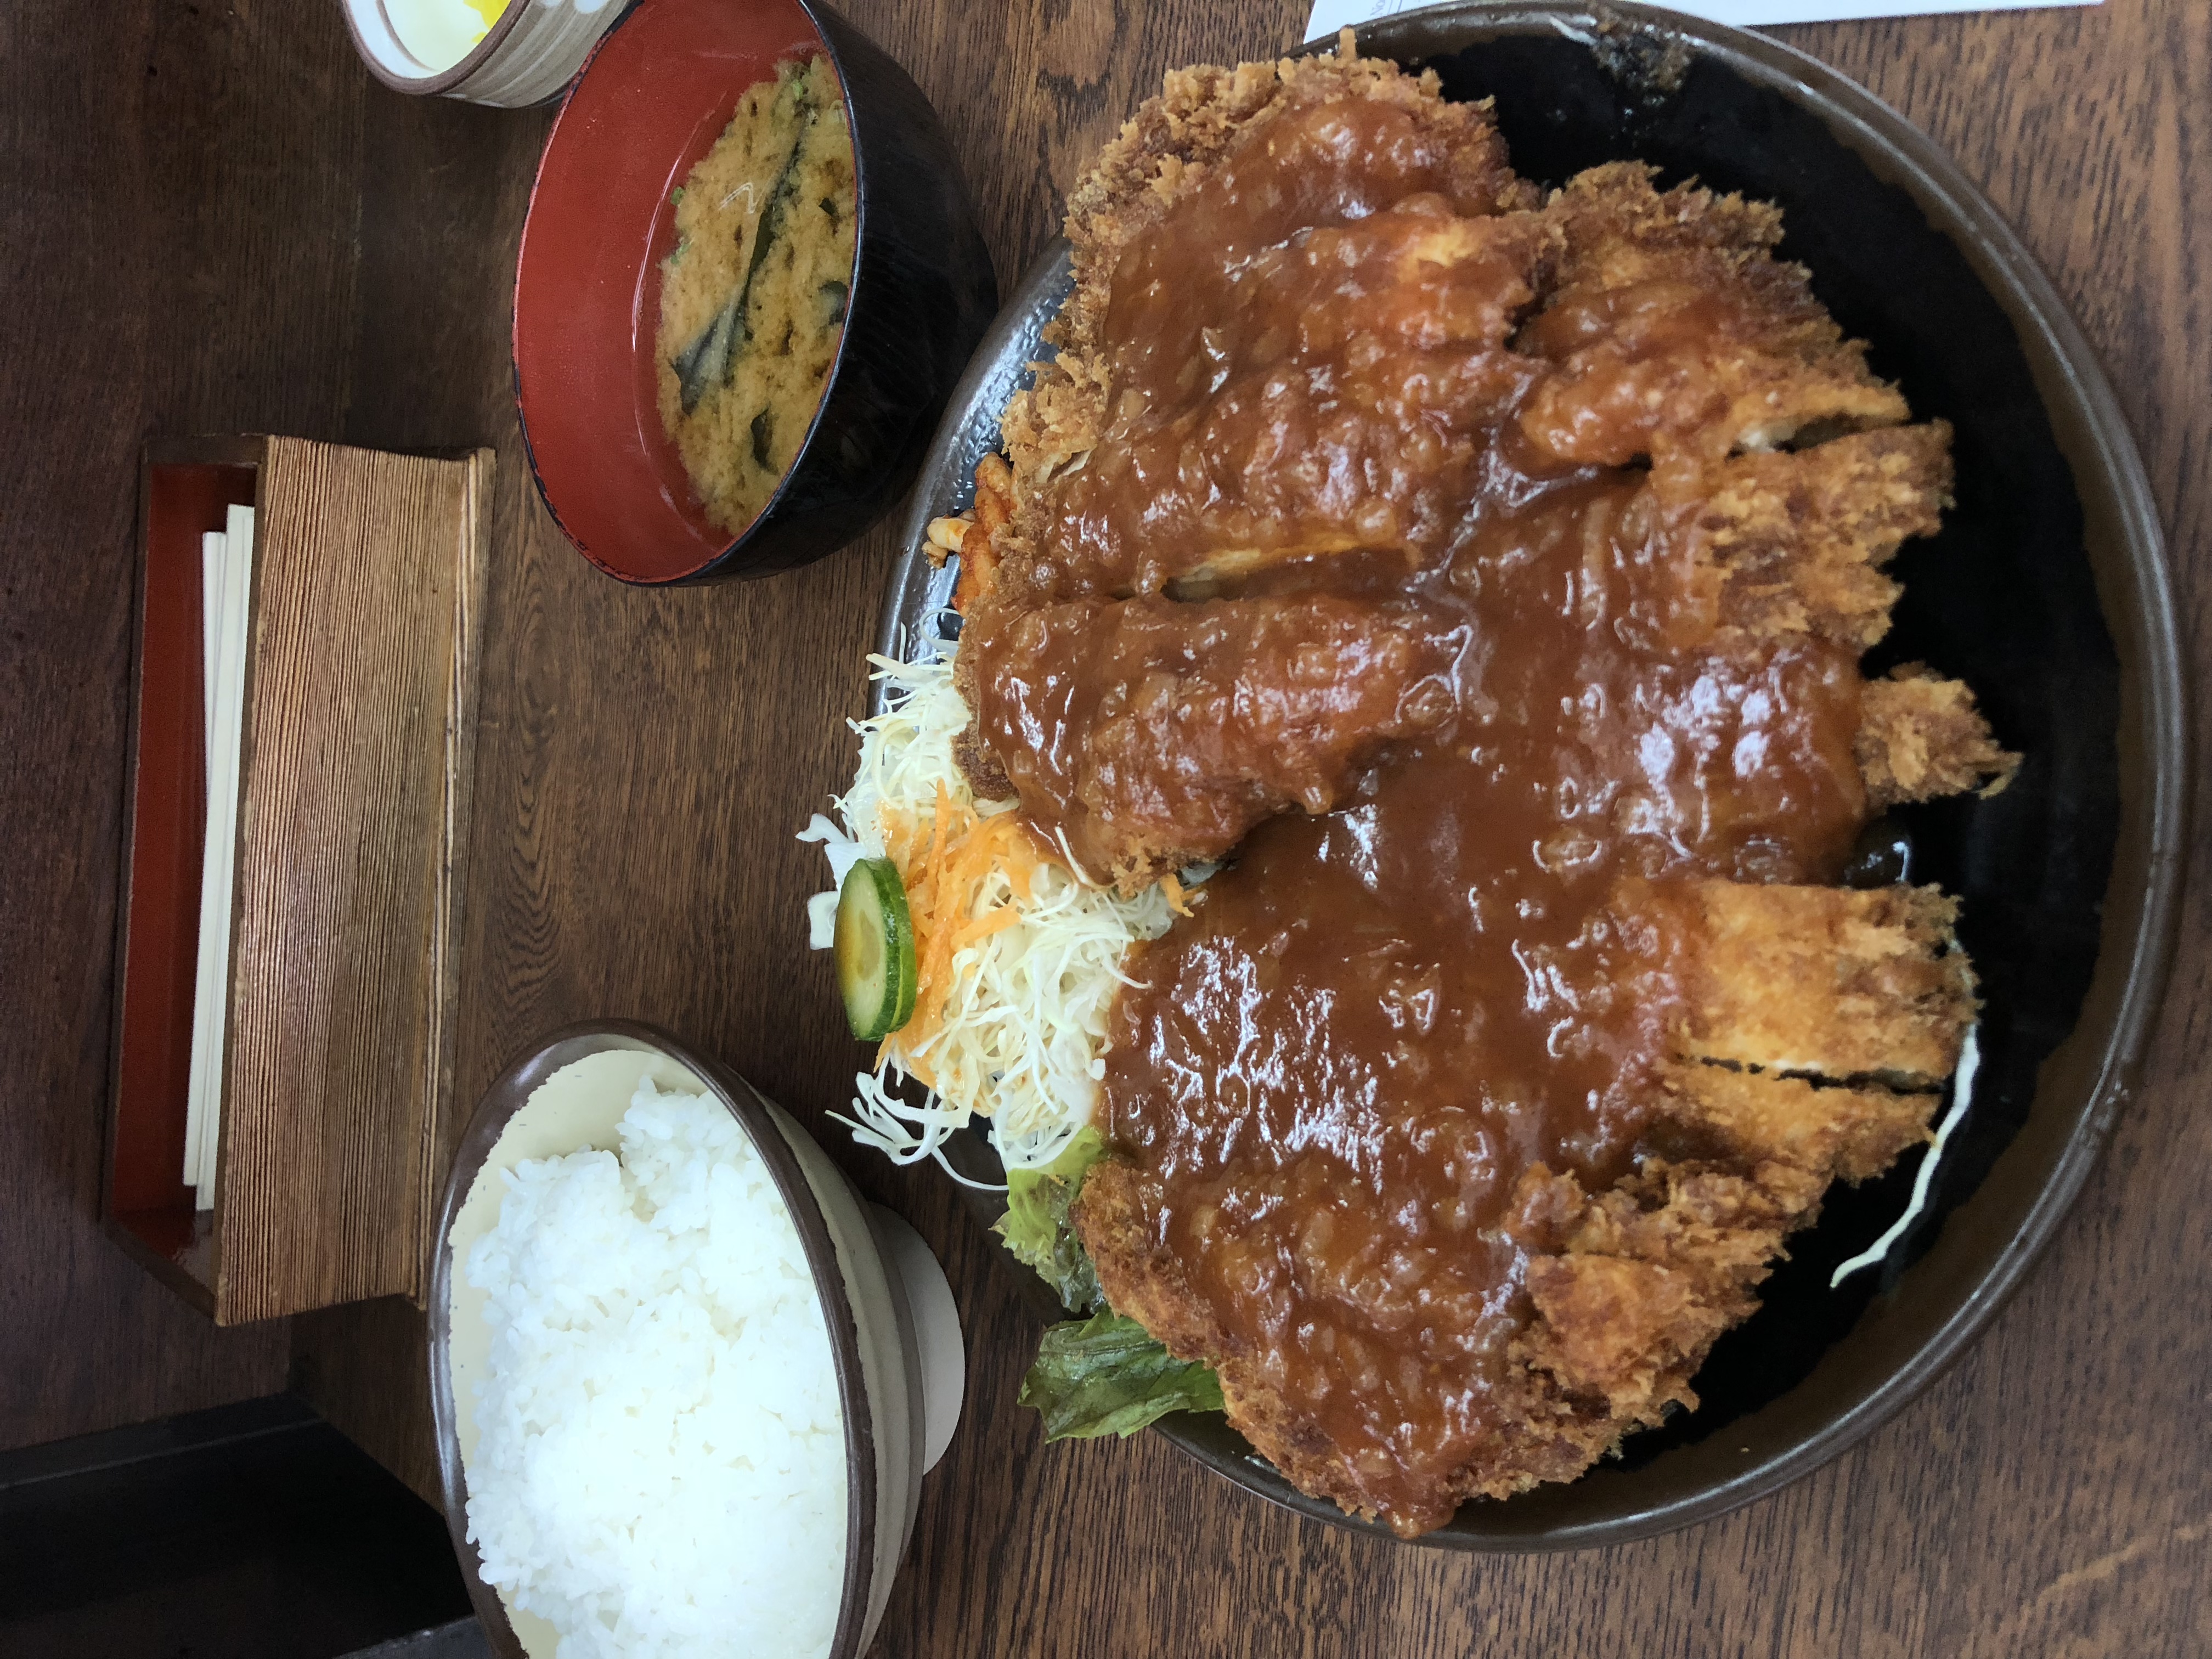 美味しい物 ジャンボチキンカツが超有名 京都の学生さん御用達 安くてボリュームがあって 美味しい洋食定食屋 さん ハイライト食堂 さんに行ってみよう やってみよう ブログ